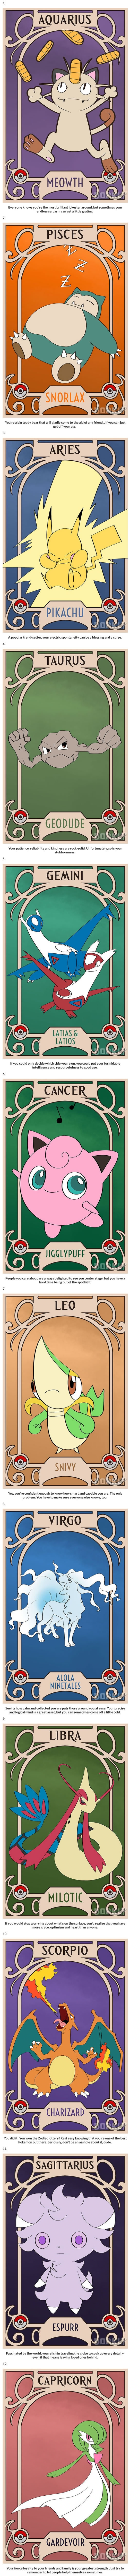 Pokemon as the Zodiac signs